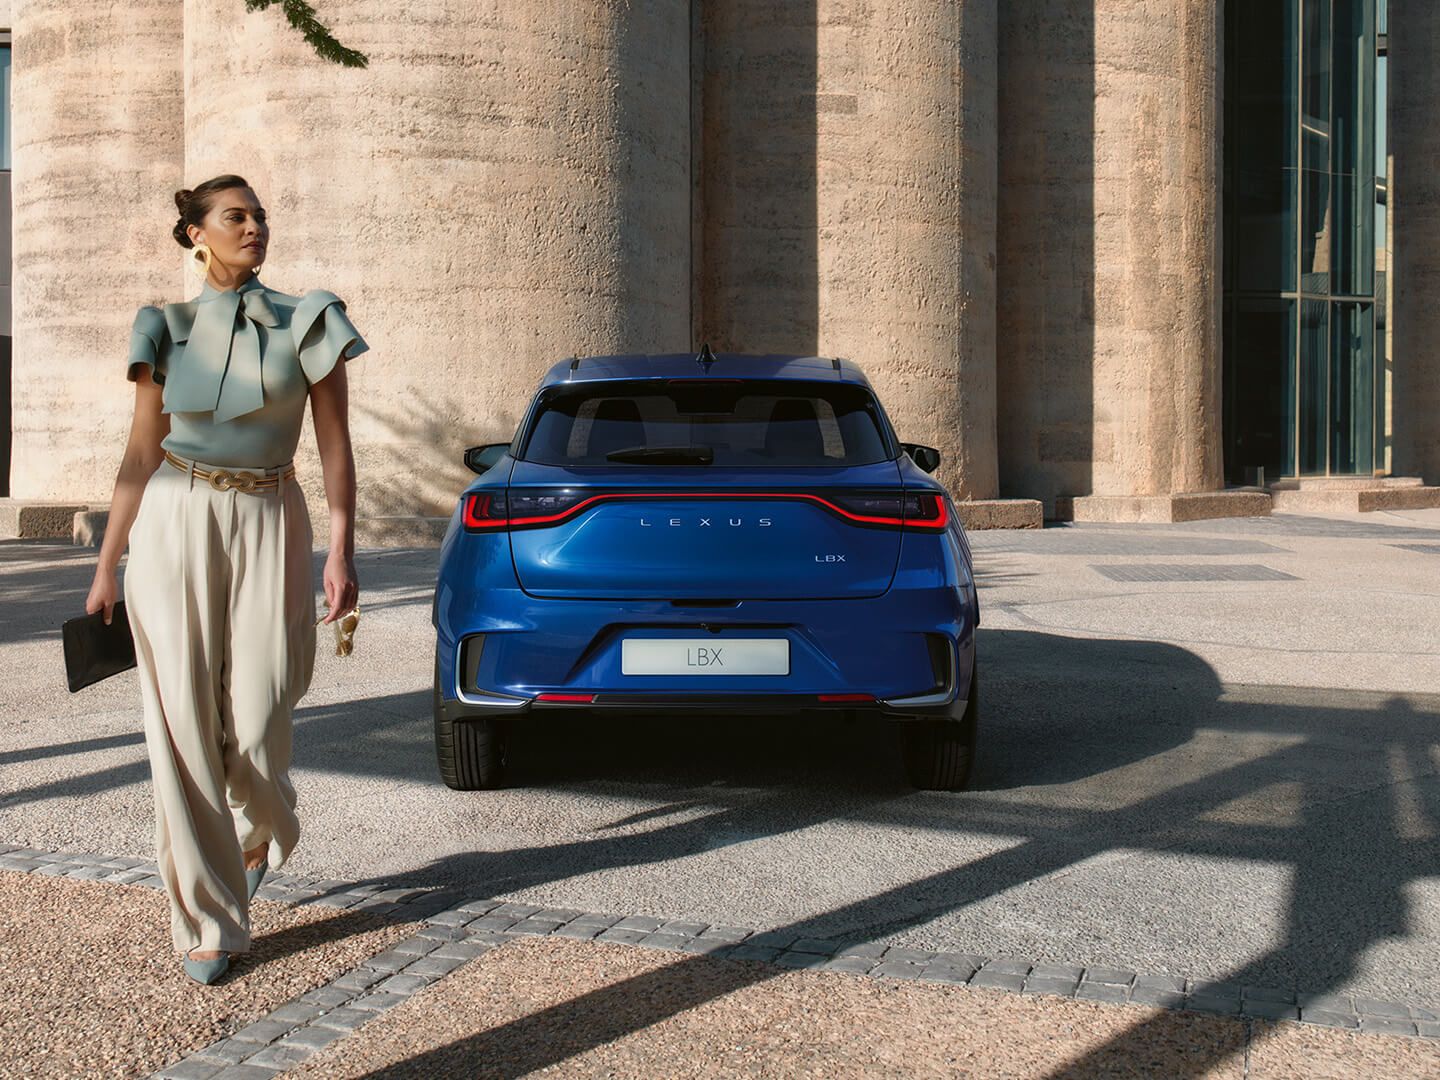 A Women walking behind a Blue Lexus LBX model